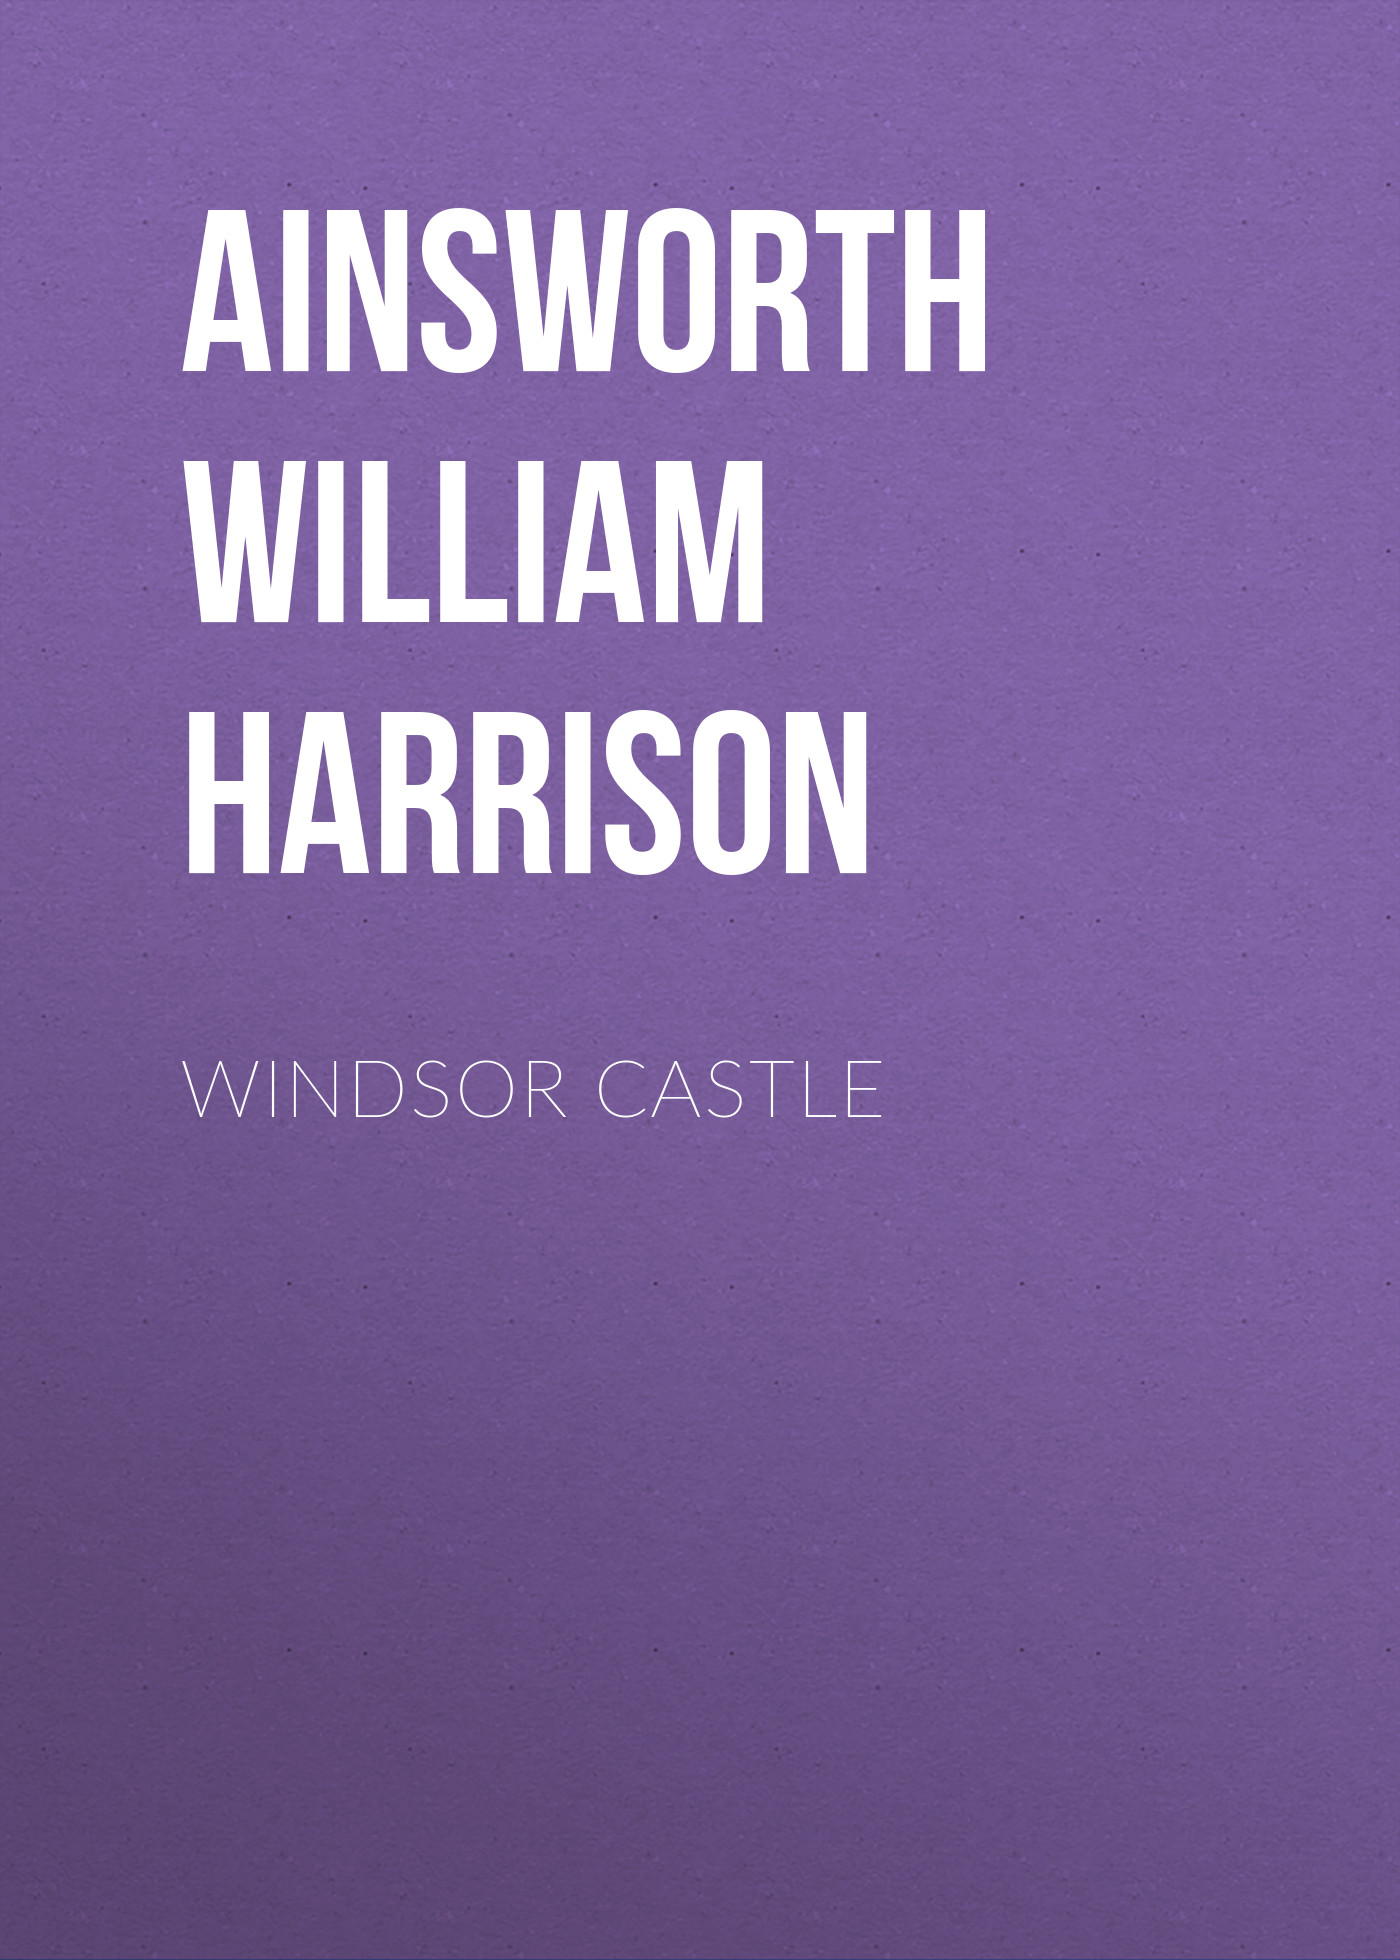 Книга Windsor Castle из серии , созданная William Ainsworth, может относится к жанру Историческая фантастика, Литература 19 века, Европейская старинная литература, Зарубежная классика, Исторические приключения. Стоимость электронной книги Windsor Castle с идентификатором 36365318 составляет 0 руб.